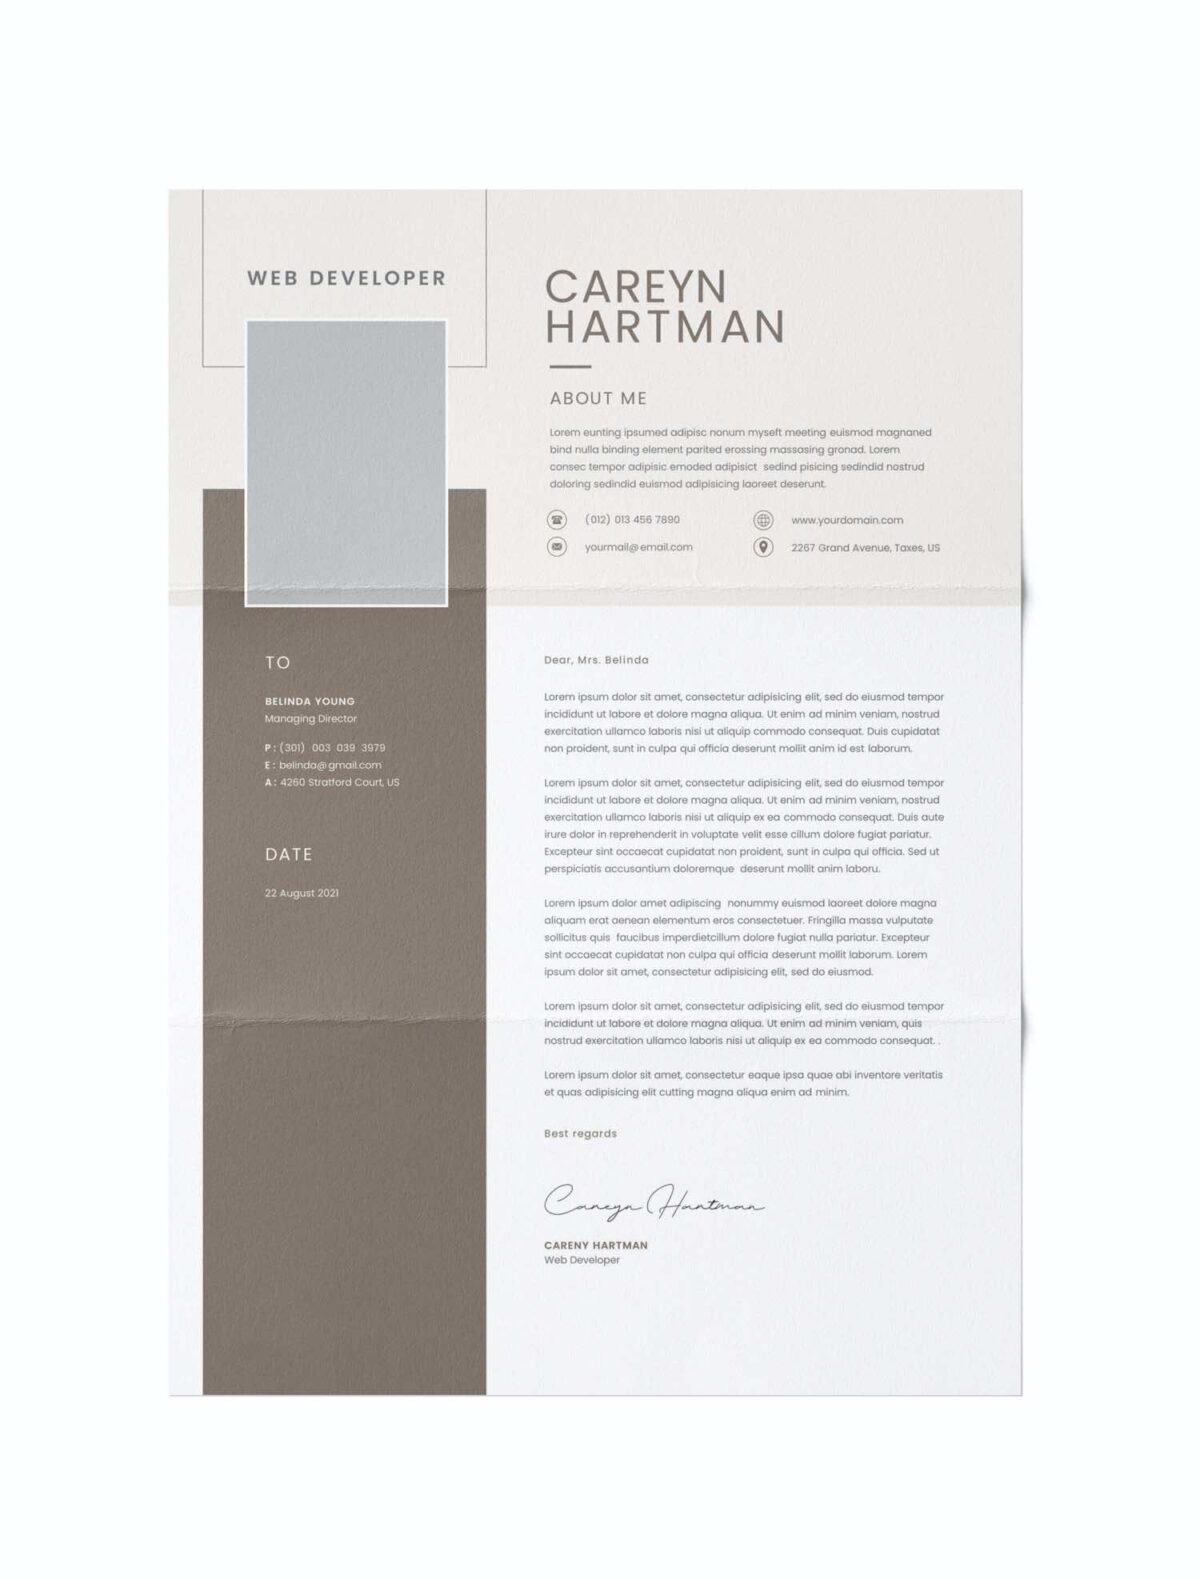 CV #19 Careyn Hartman